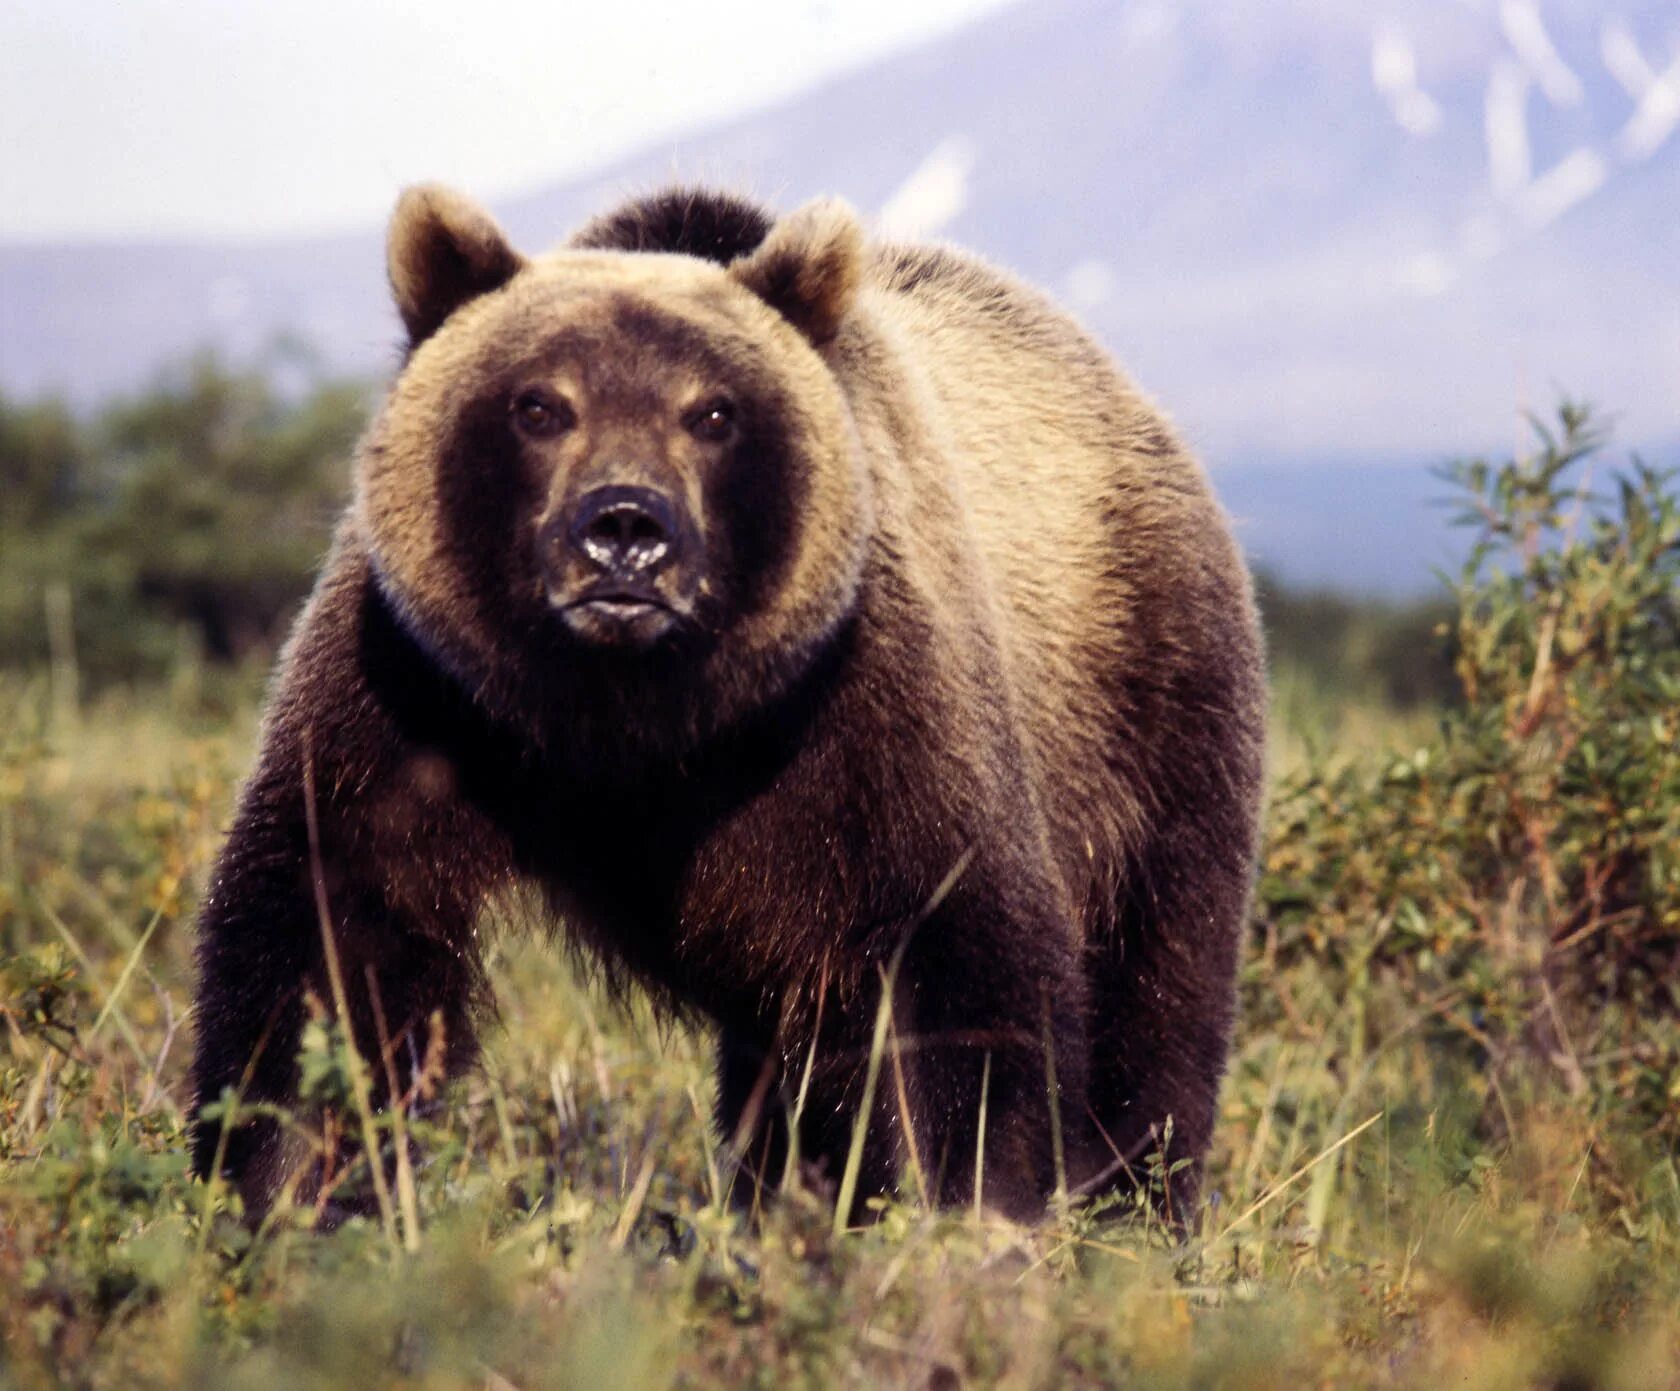 Сочинение по фото камчатский бурый медведь 5